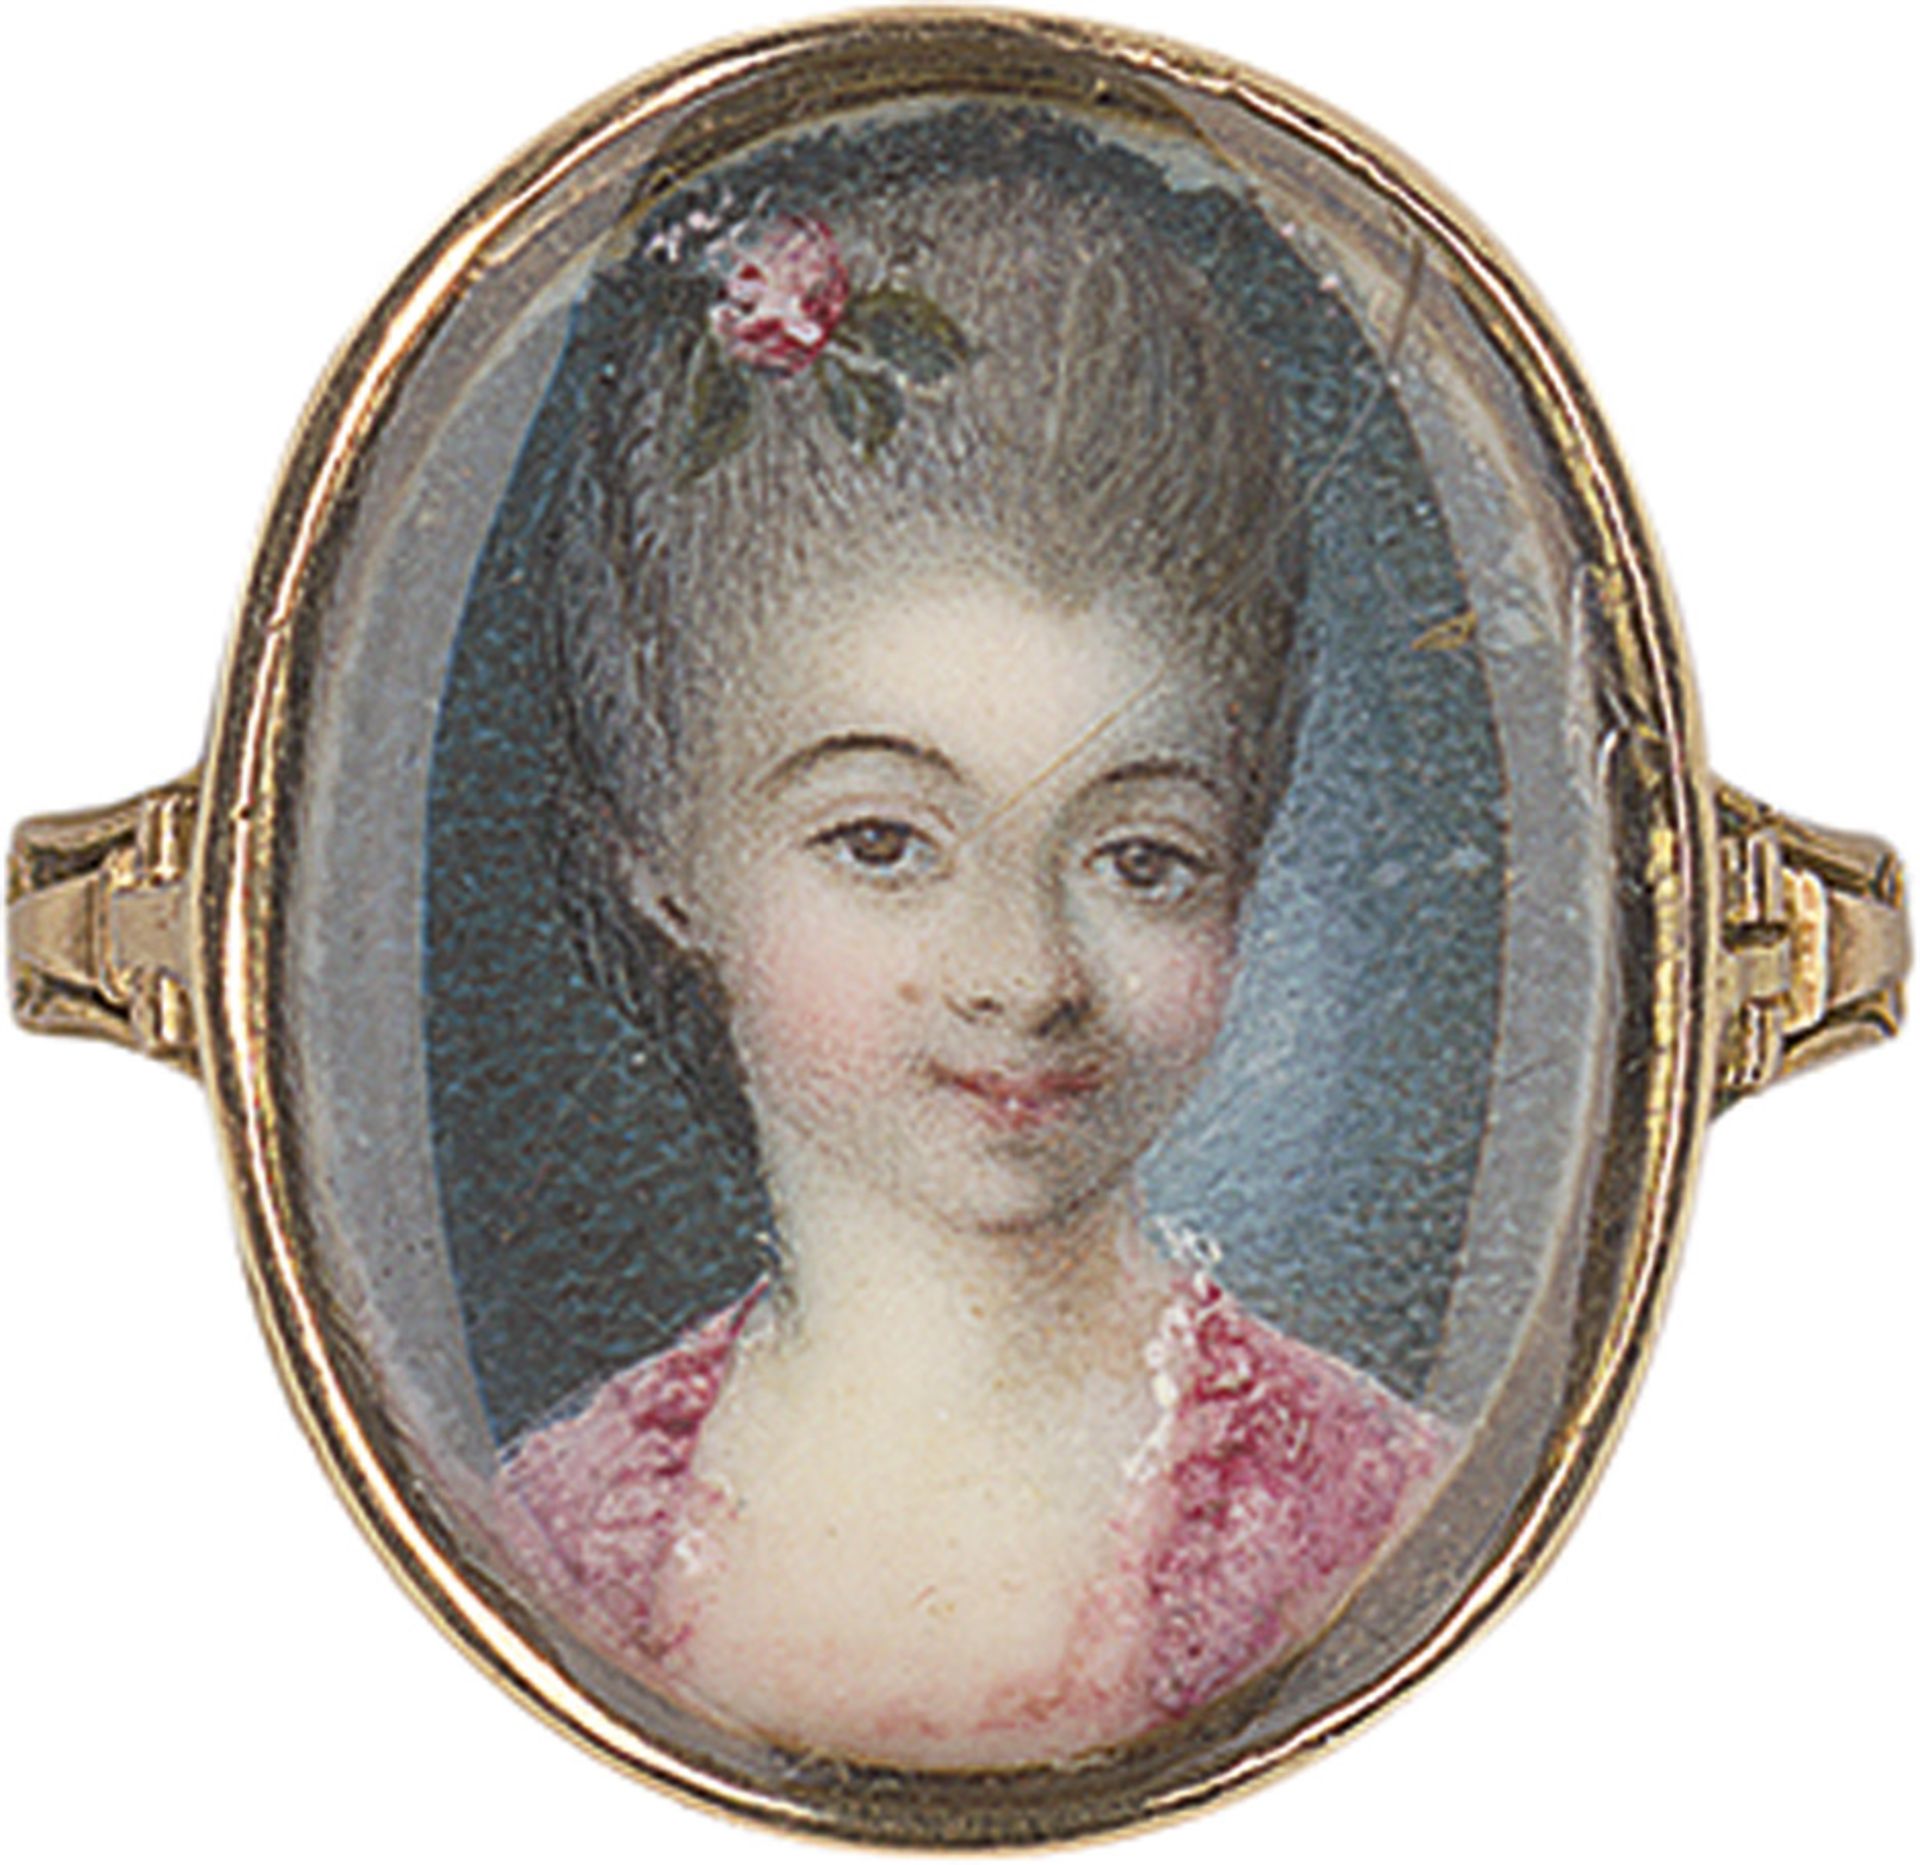 Französisch: um 1770. Bildnisring um 1770. Goldener Bildnisring, mit Miniatur auf Elfenbein: Porträt